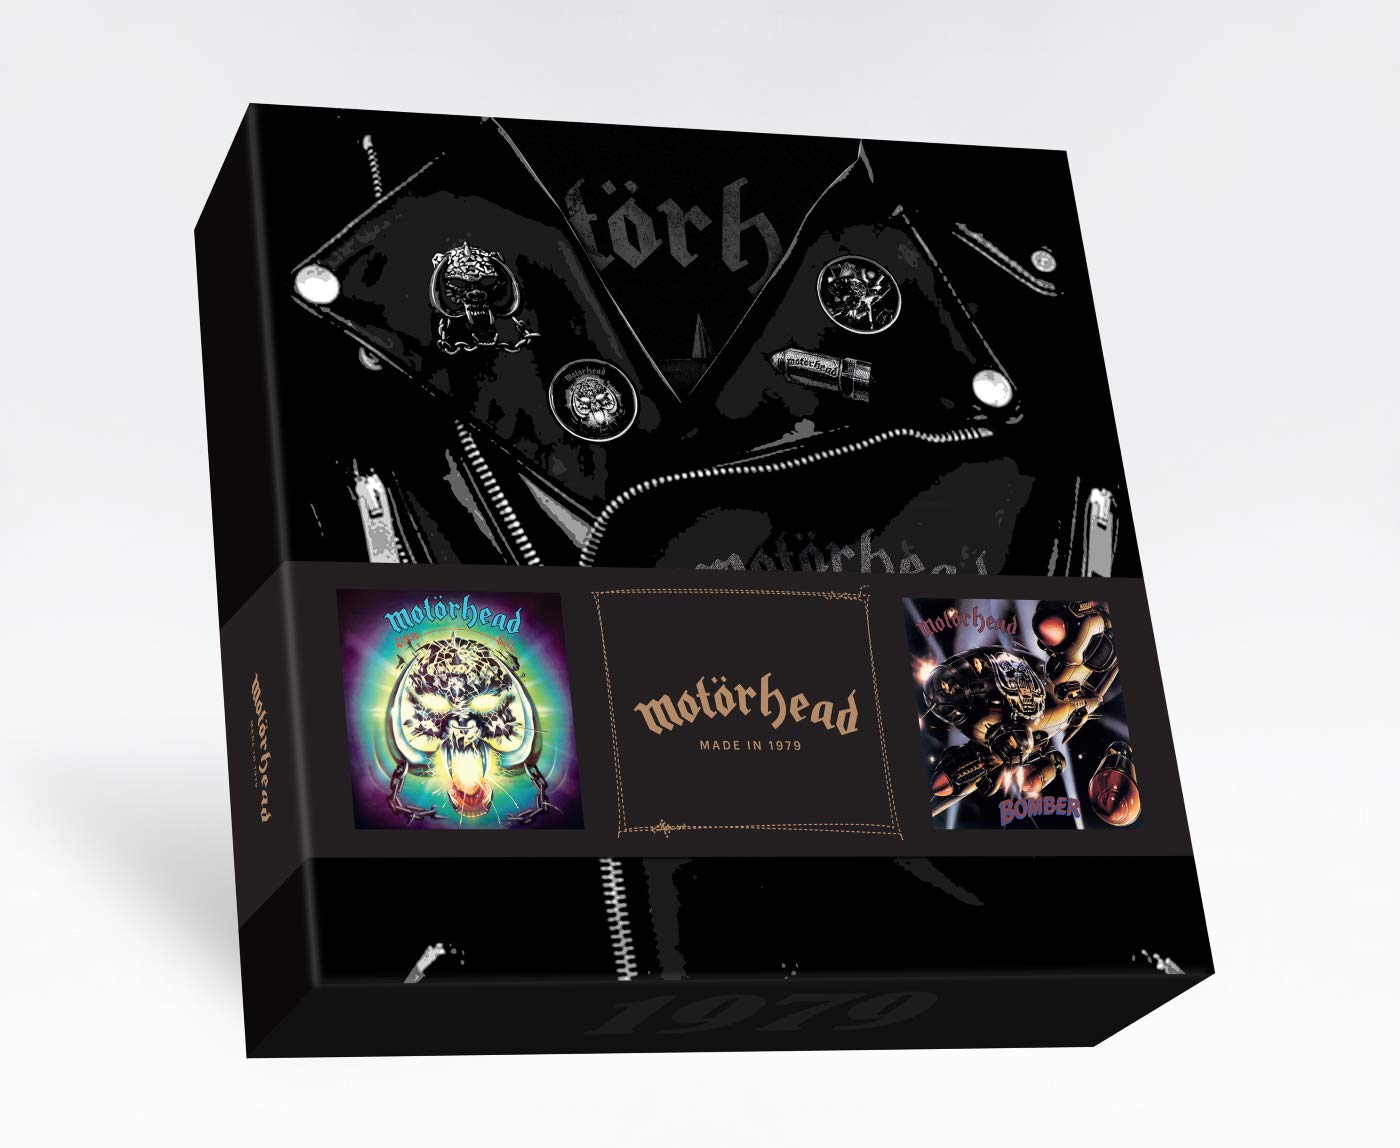 Motorhead - Motorhead 1979 Box set